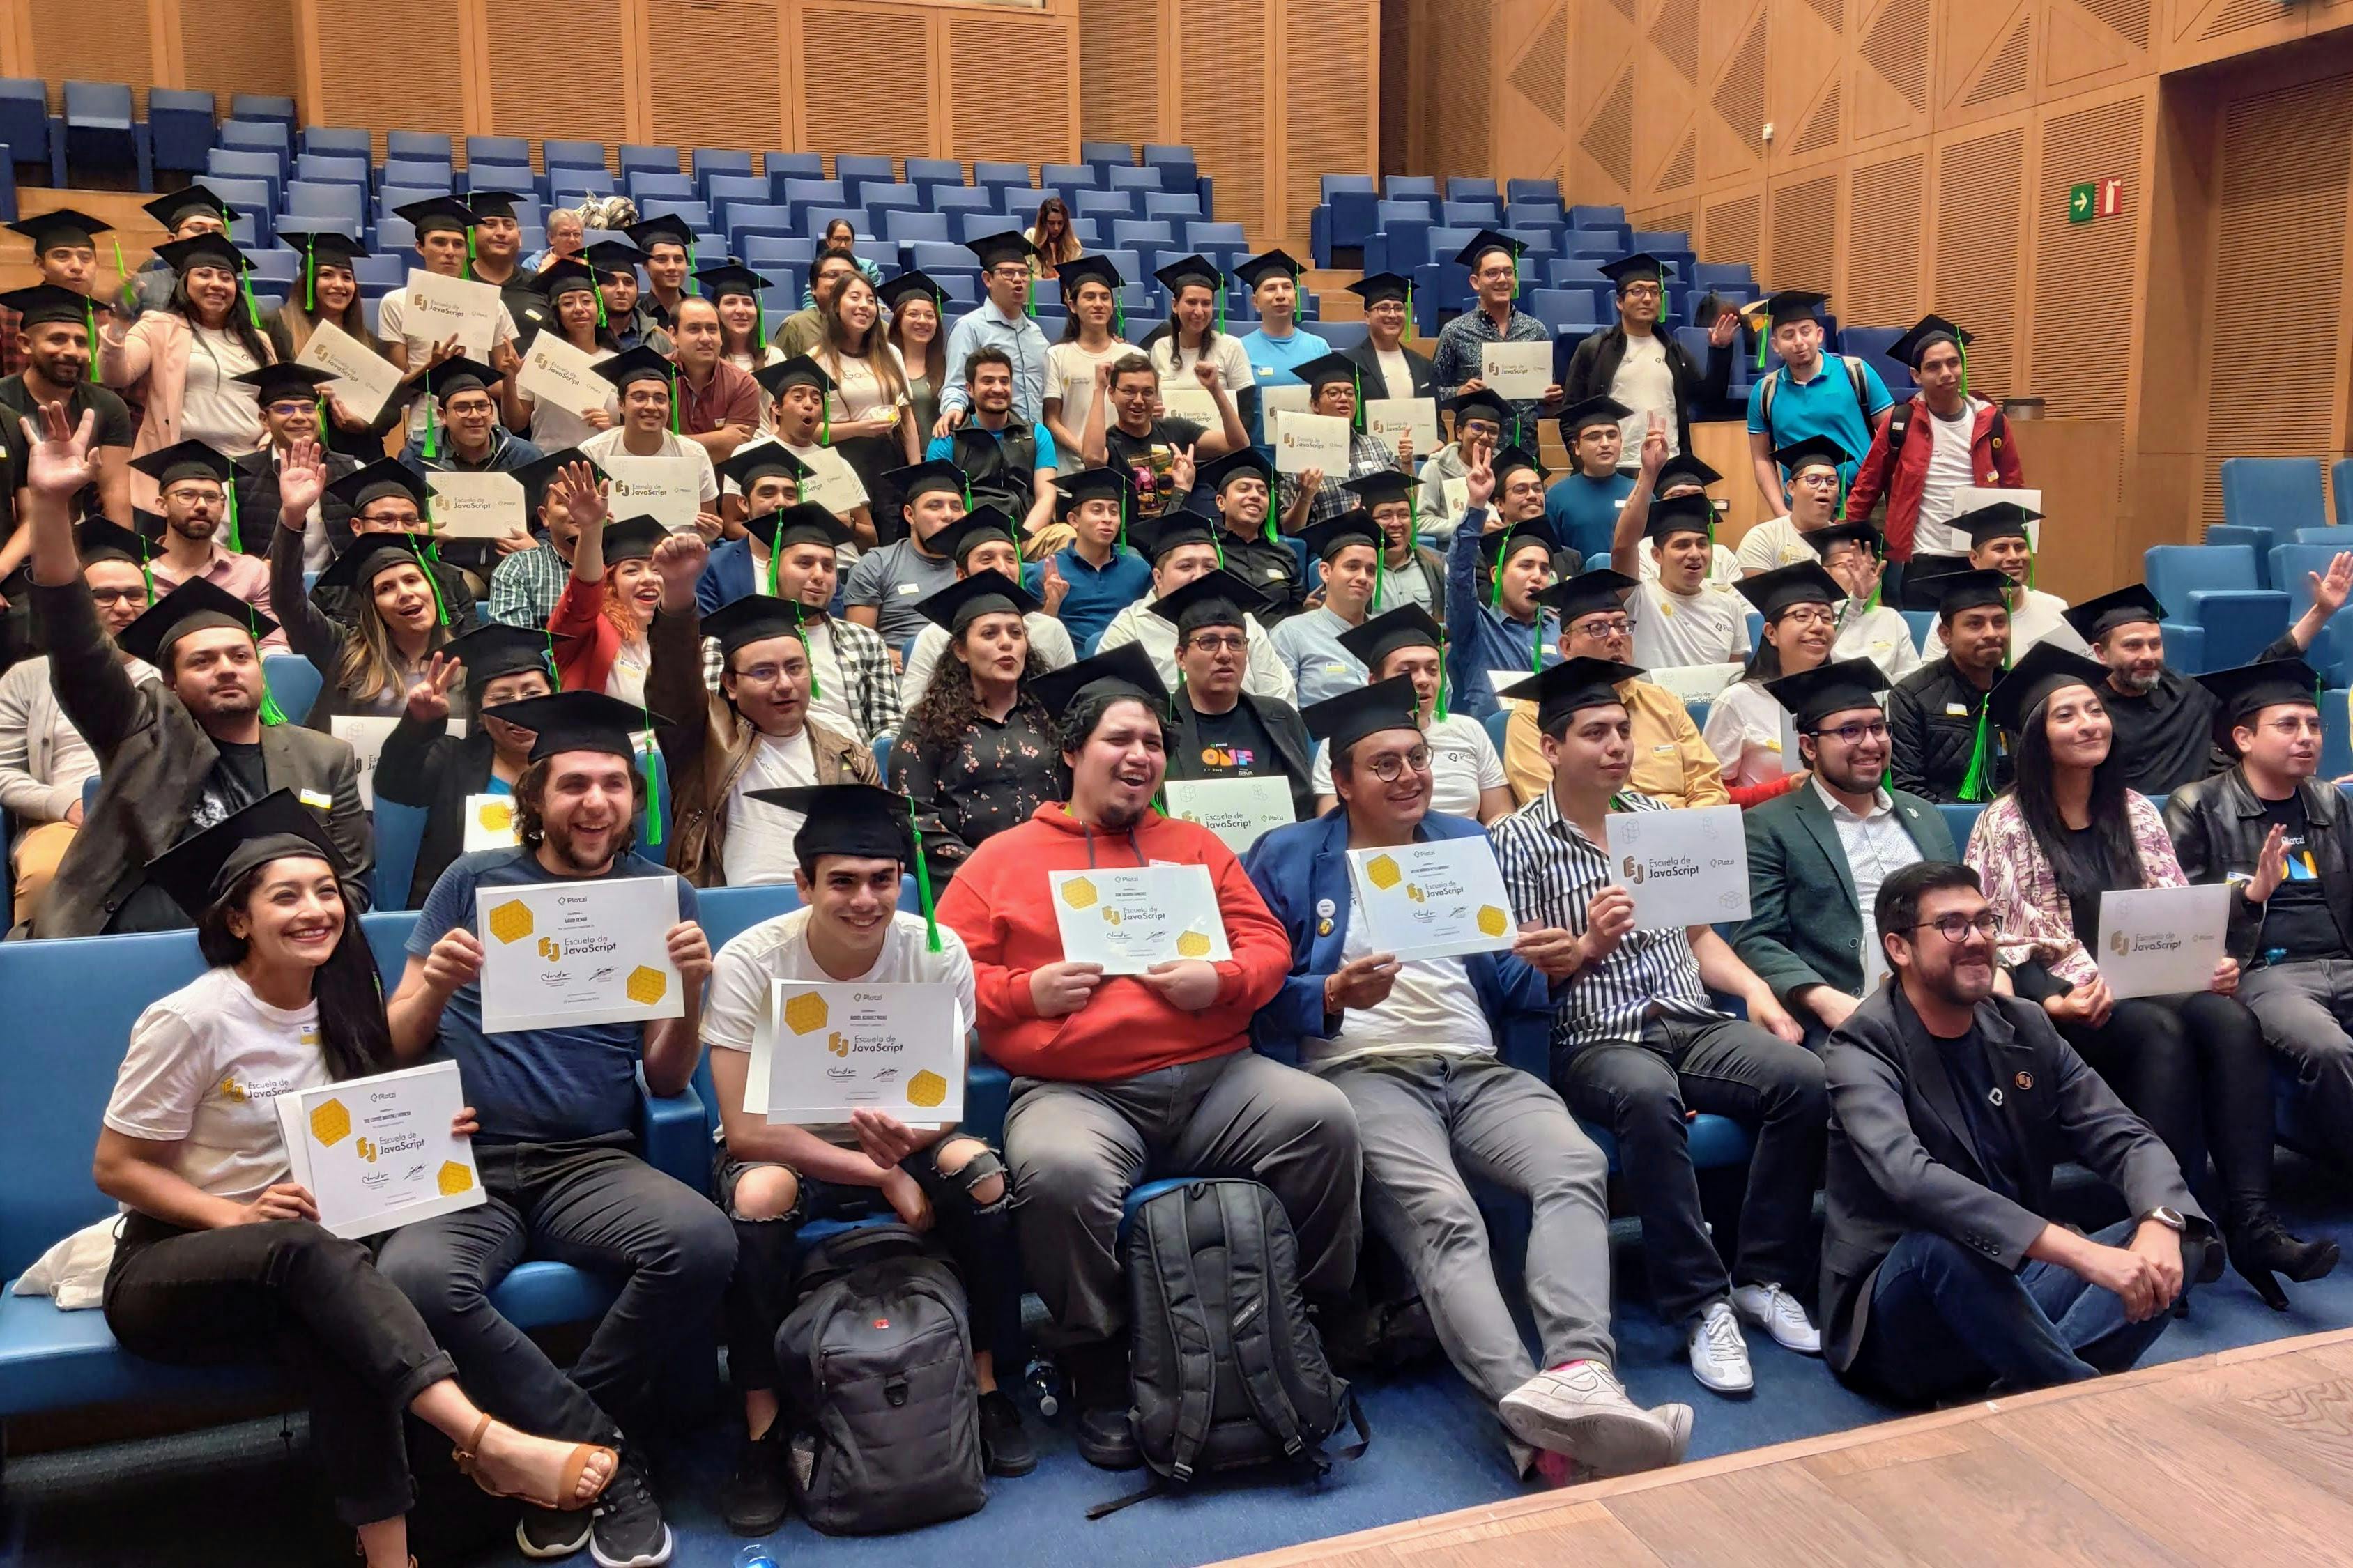 Fotografía de todos los graduados de la Escuela de Javascript sosteniendo su diploma. 